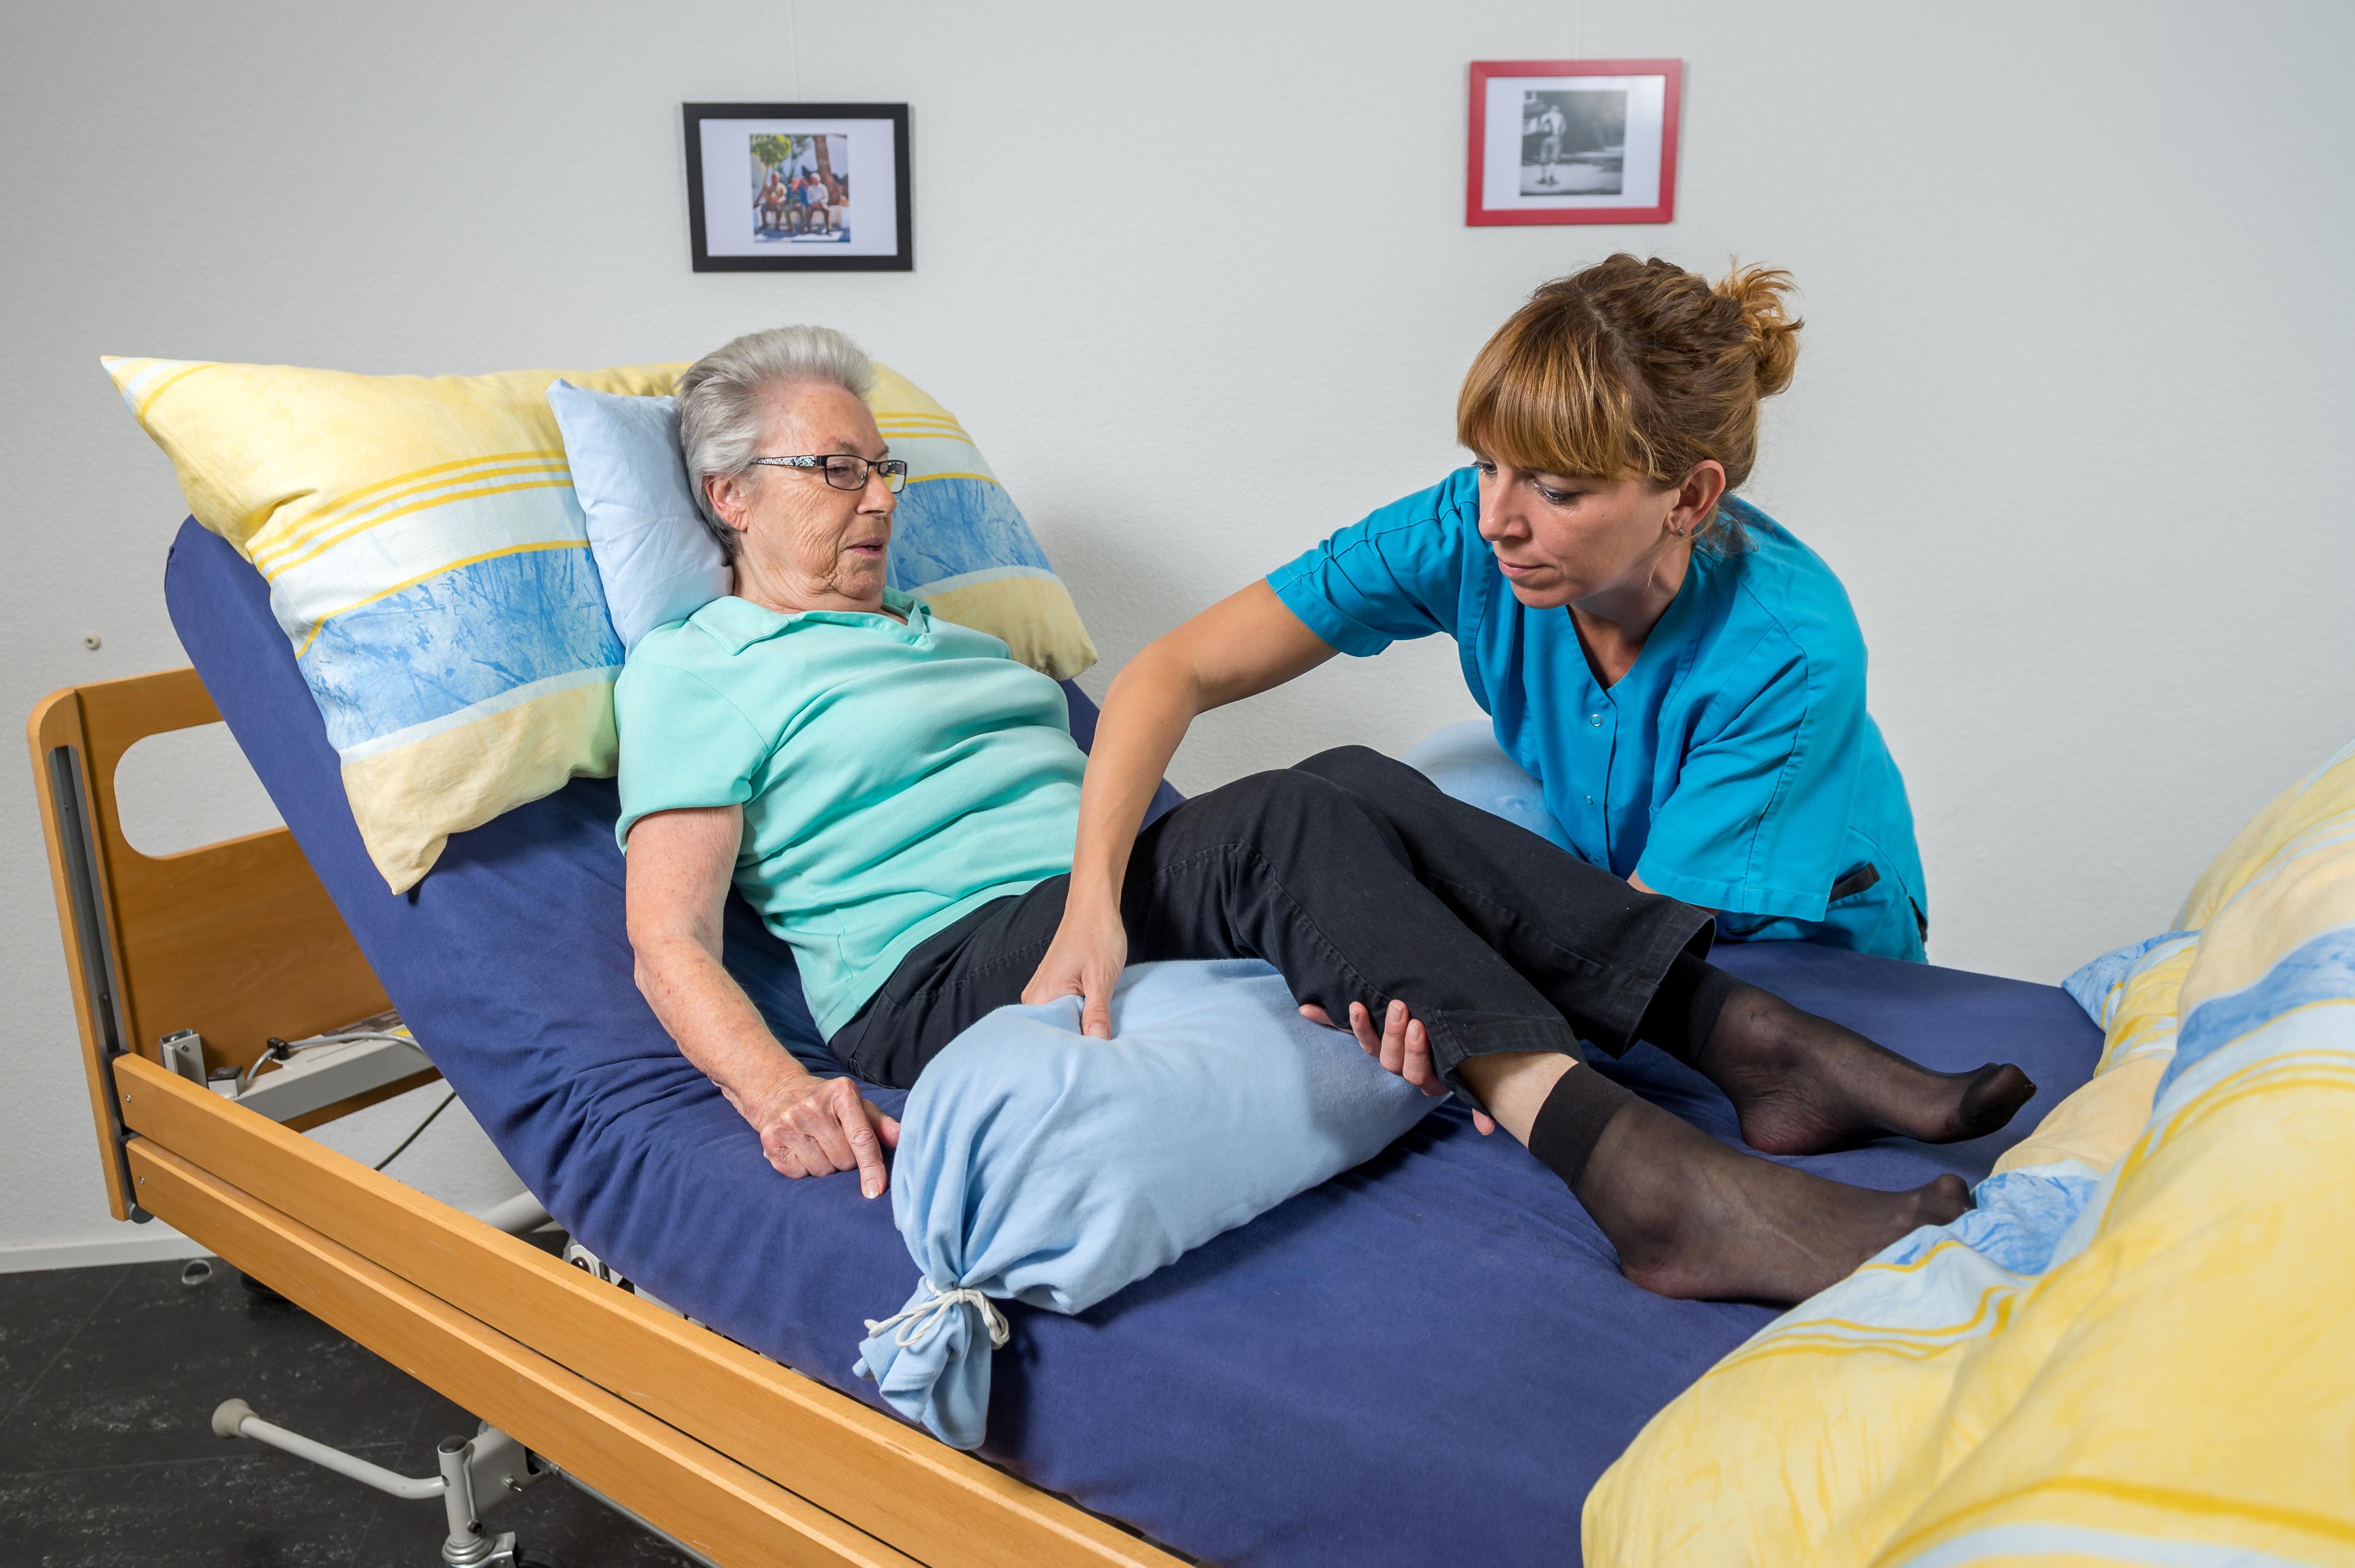 Une aide-soignante redresse les jambes d'une patiente allongée sur le lit pour lui placer les genoux. 